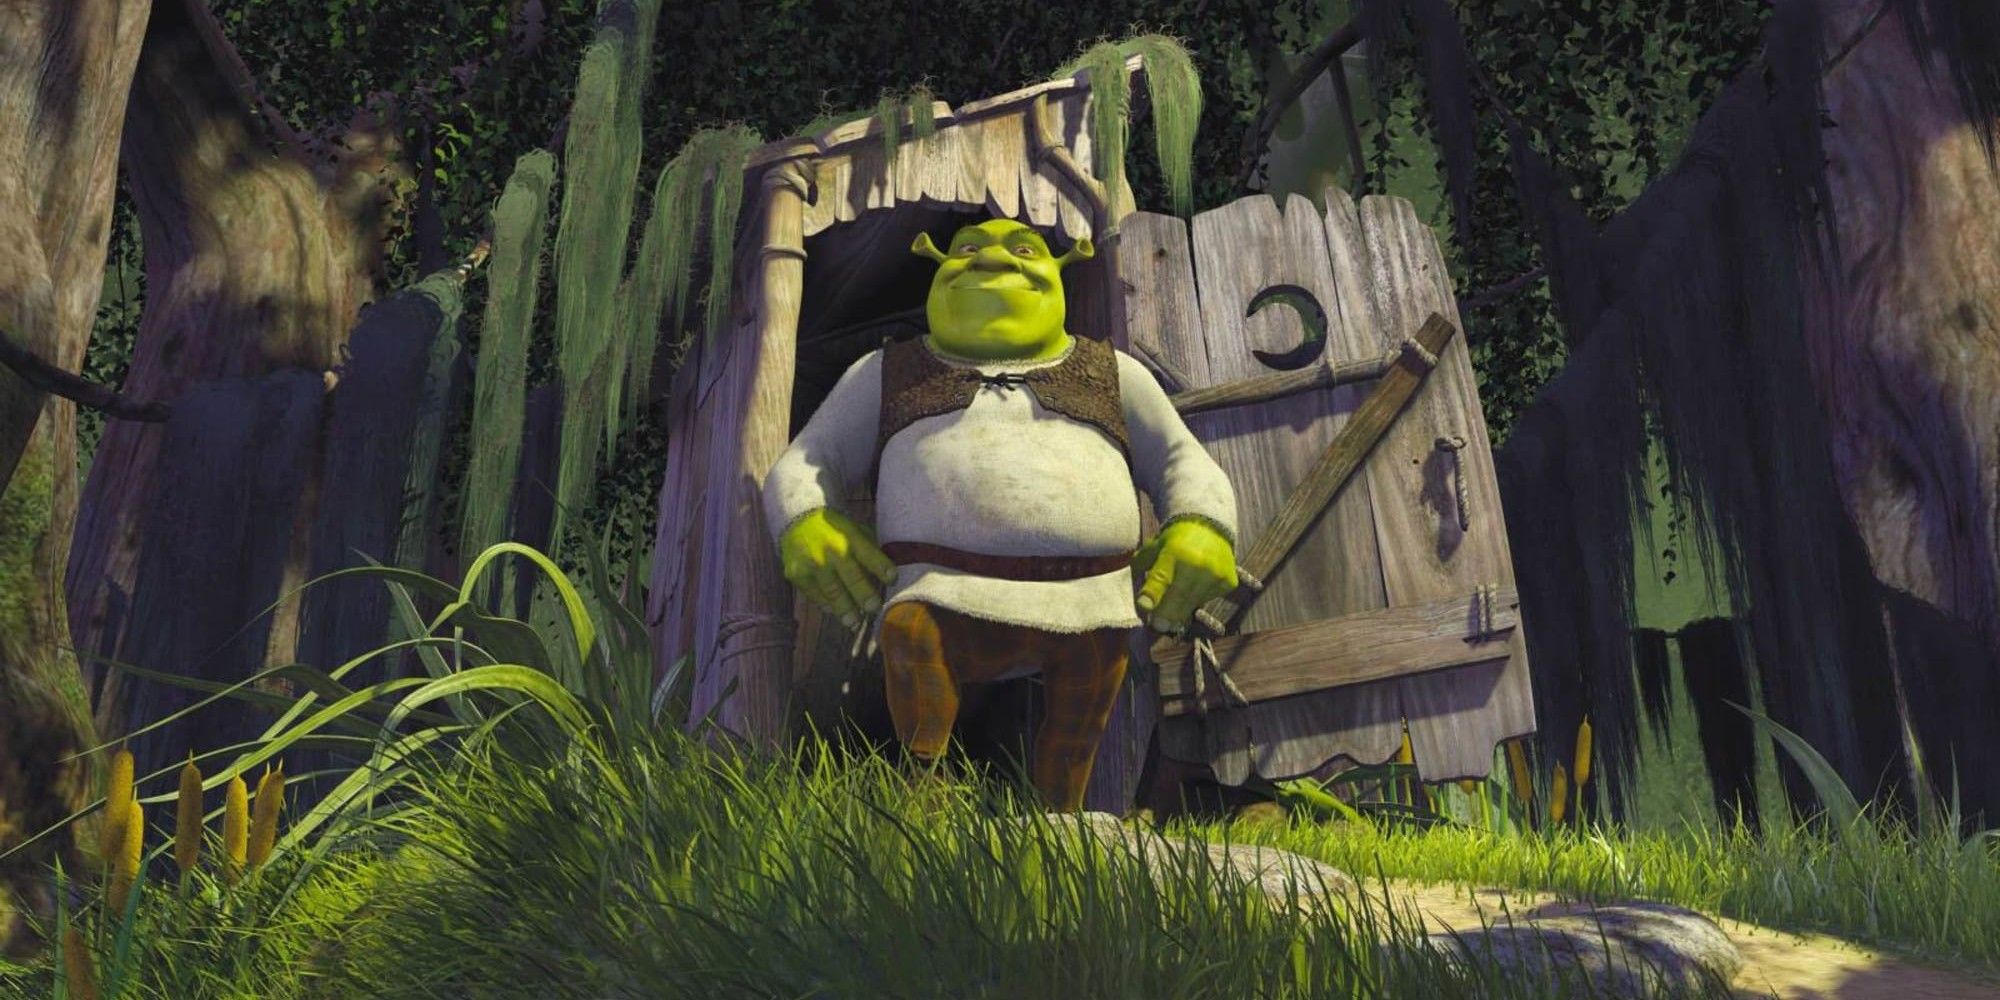 Shrek leaves his house in Shrek